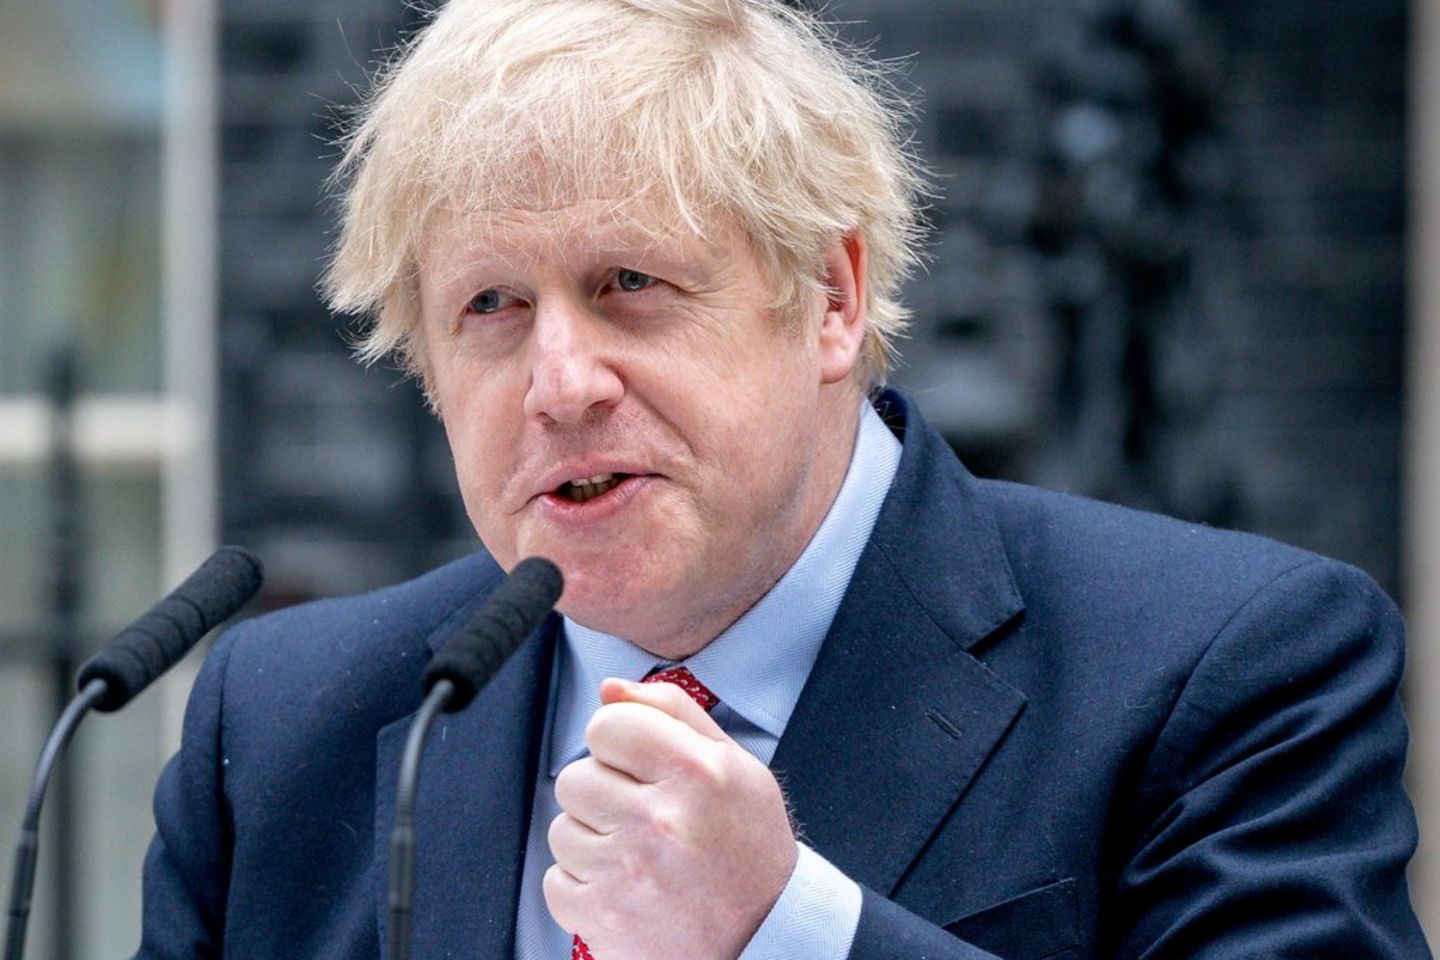 Stolperte 2022 über die "Partygate"-Affäre: Boris Johnson.